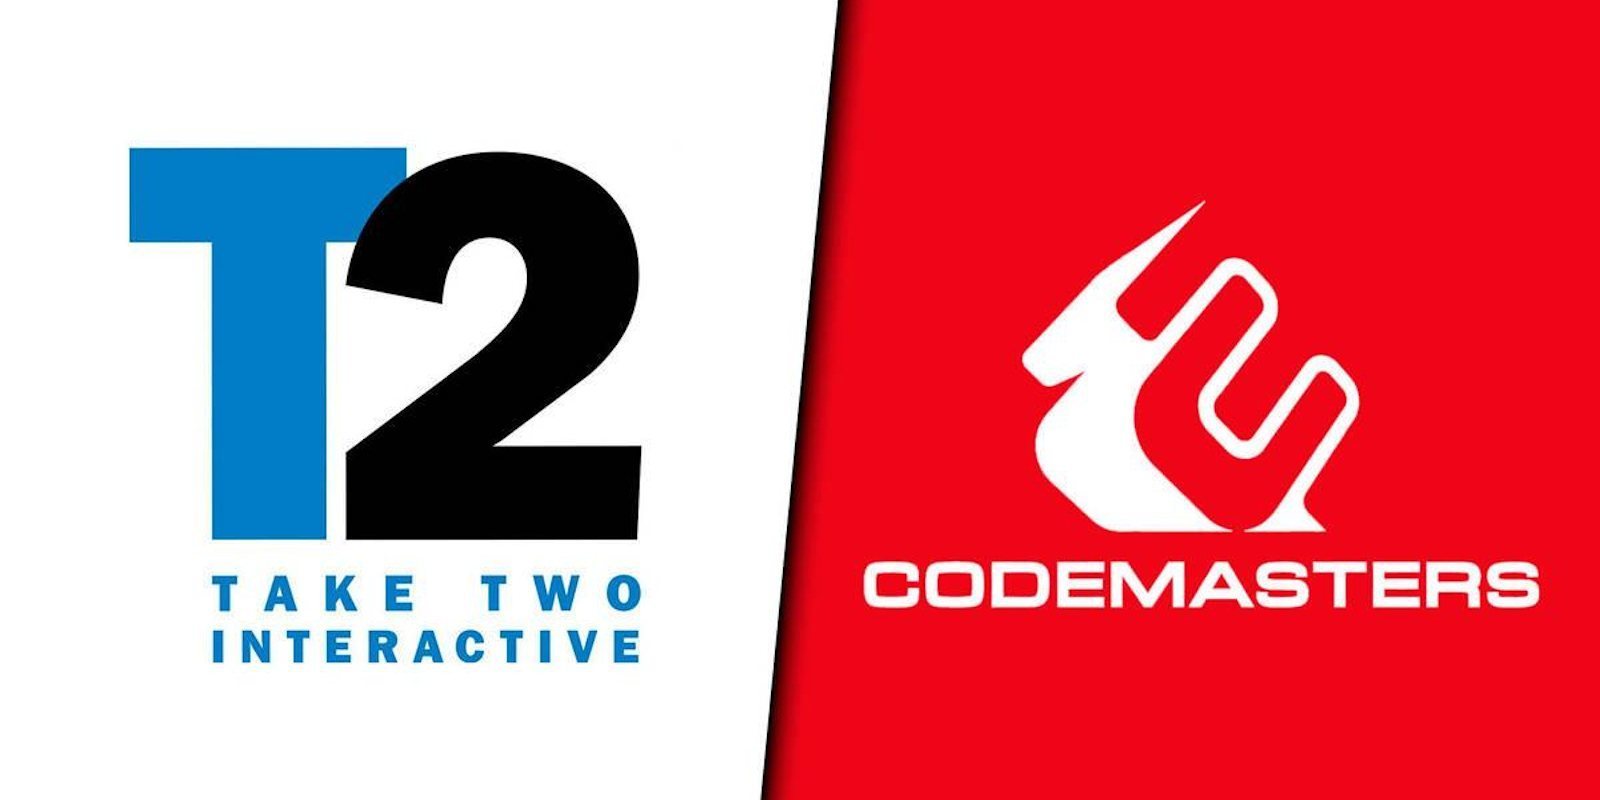 Es oficial: Codemasters llega a un acuerdo con Take-Two y formará parte de la editora